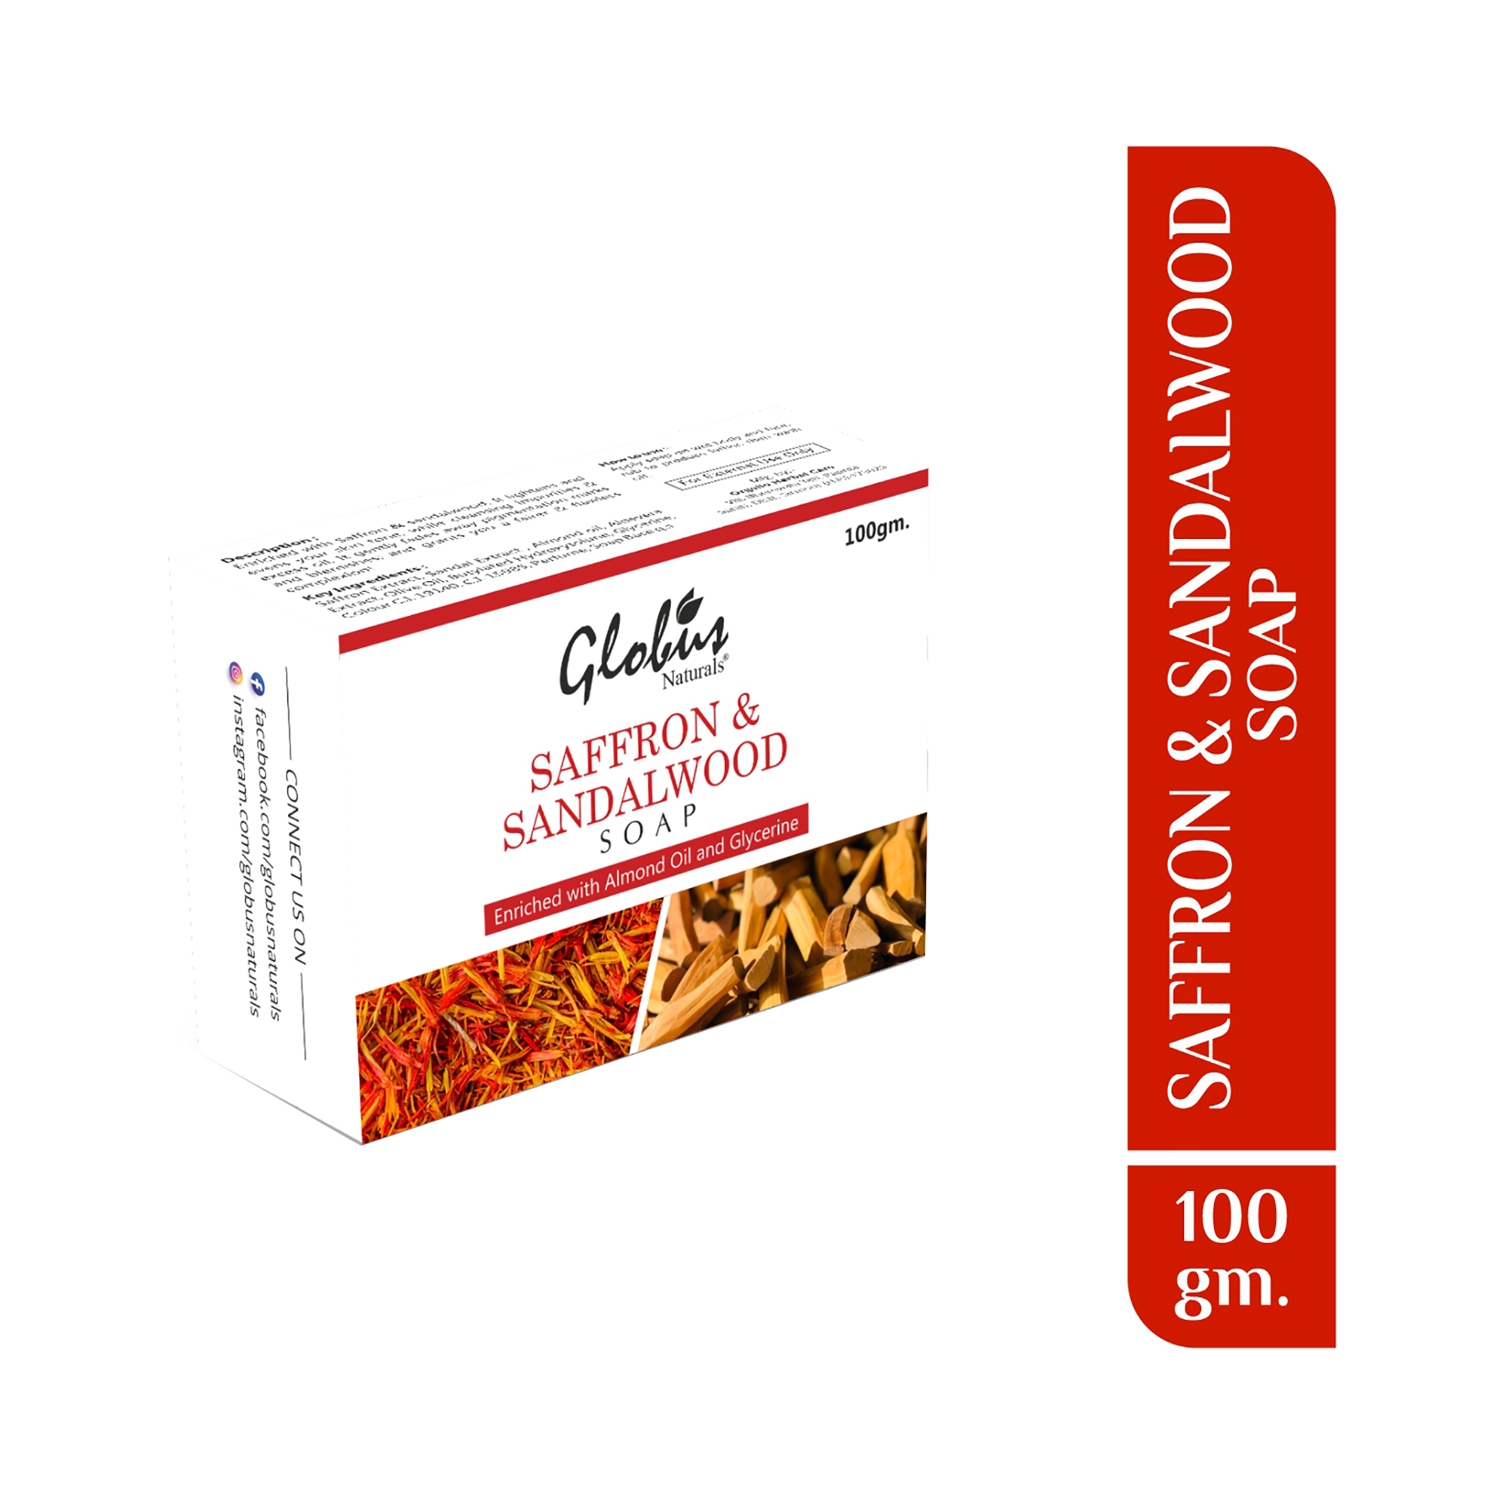 Globus Naturals | Globus Naturals Saffron & Sandalwood Soap (100g)